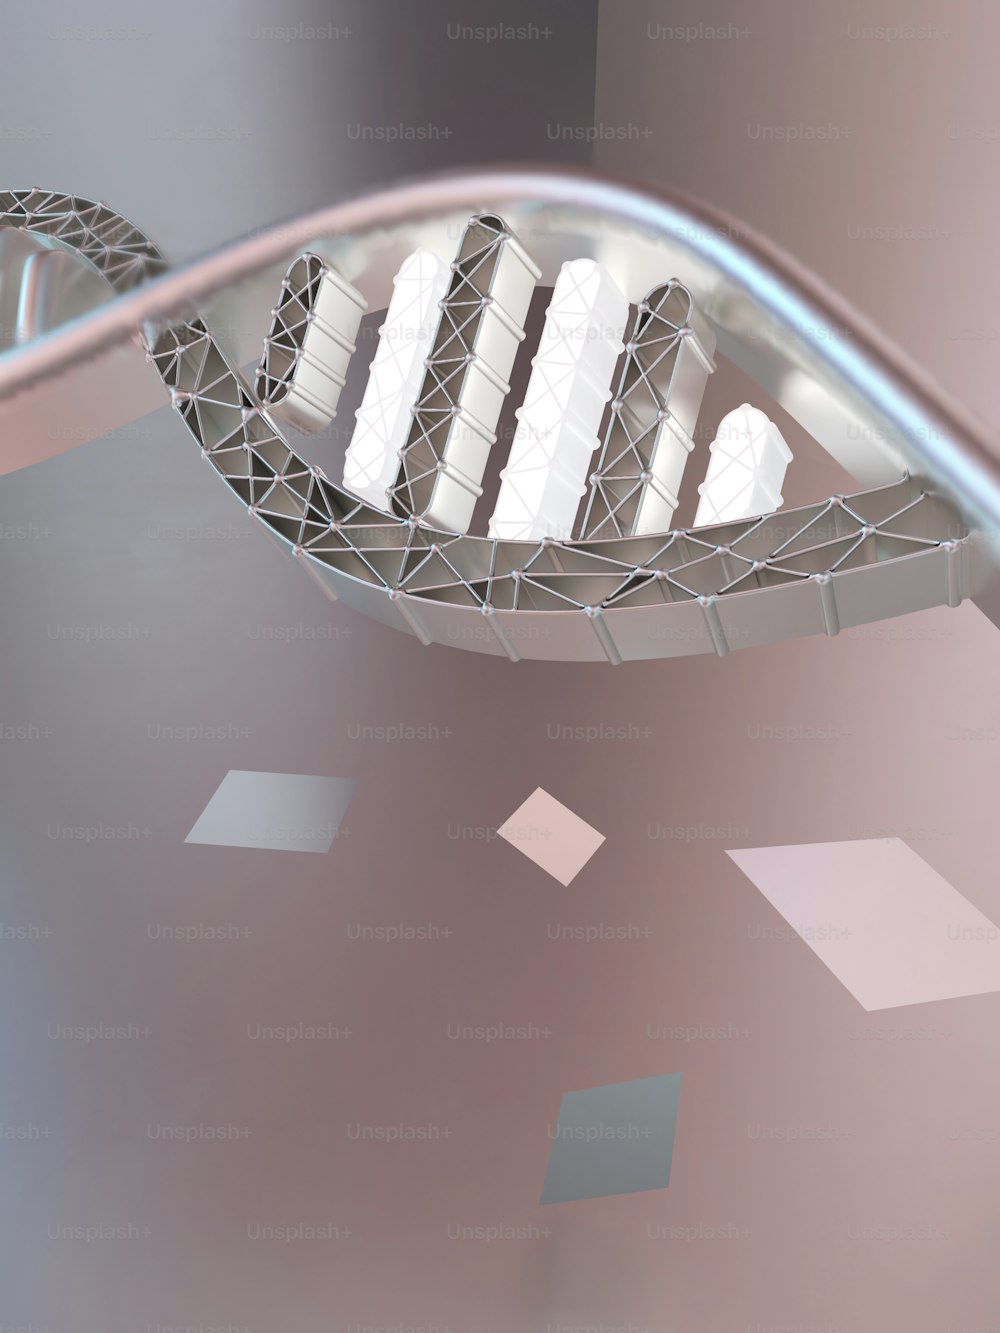 Una imagen 3D de una estructura con un diseño en espiral